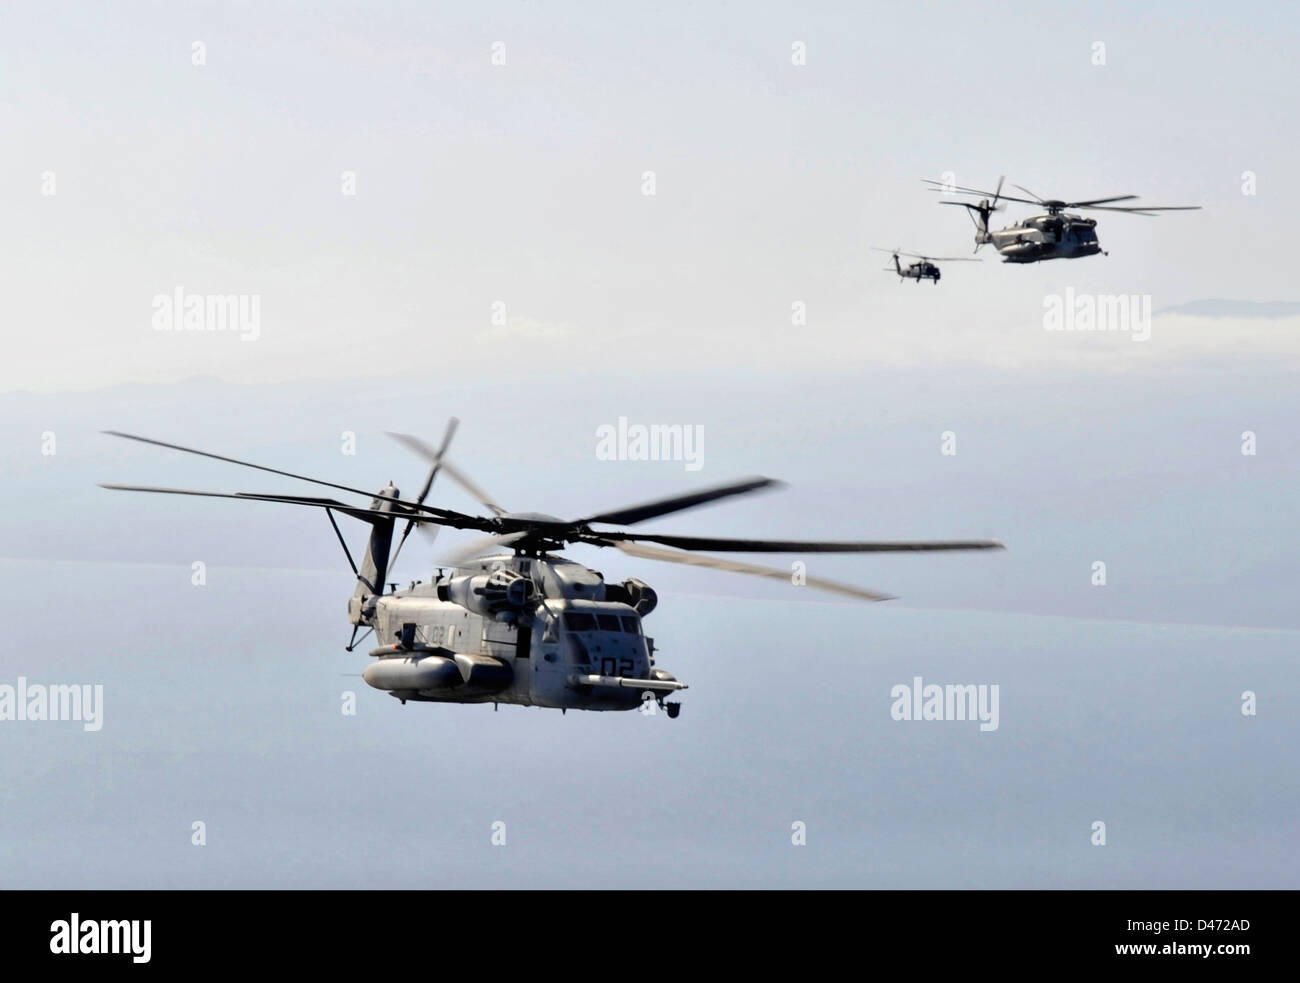 US Marine Corps CH-53 Super Stallion position des hélicoptères pour faire le plein d'une armée de l'air MC-130P Combat Shadow avion pendant une mission le 29 janvier 2013 plus de Djibouti. Banque D'Images